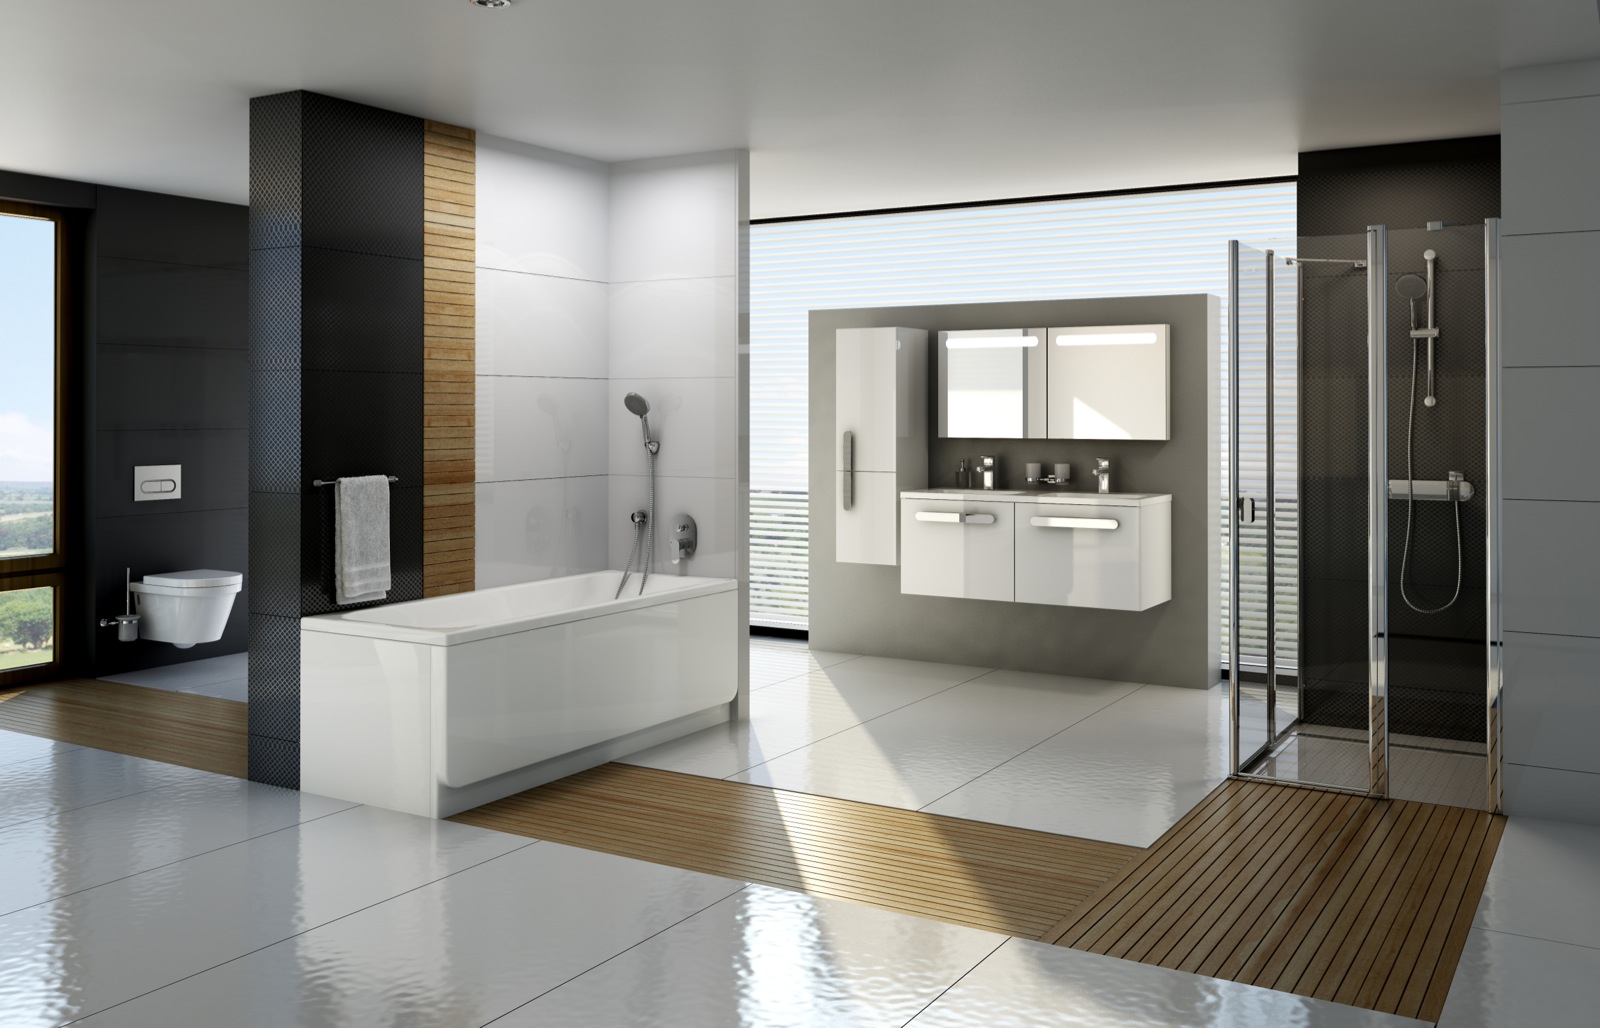 A Chrome koncepció összehangoltsága páratlan légkört teremt a fürdőszobában.